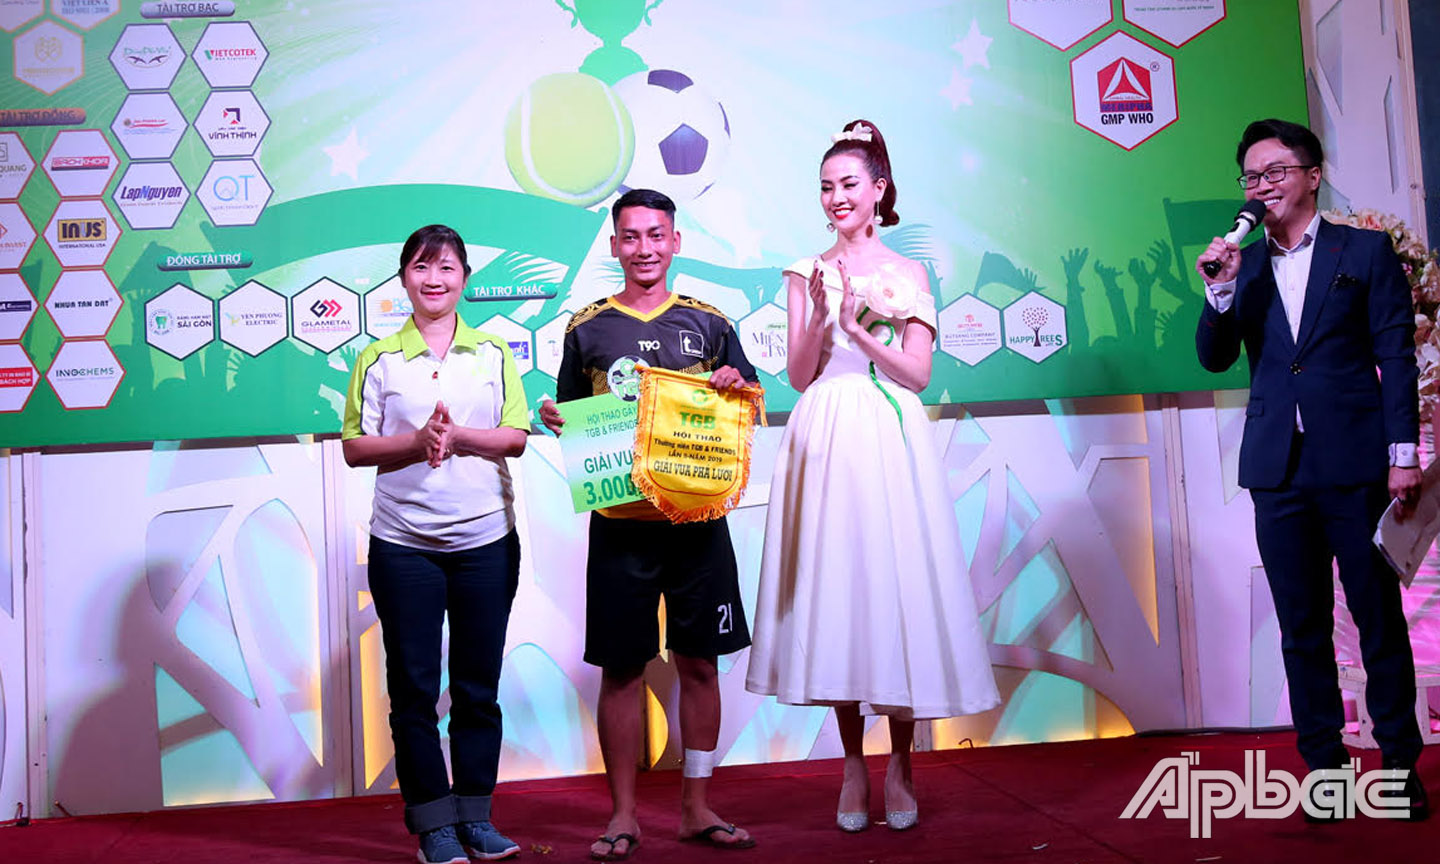 Hoa hậu Phan Thị Mơ trao giải vua phá lưới cho cầu thủ Trịnh Quang Vinh đến từ T.Group